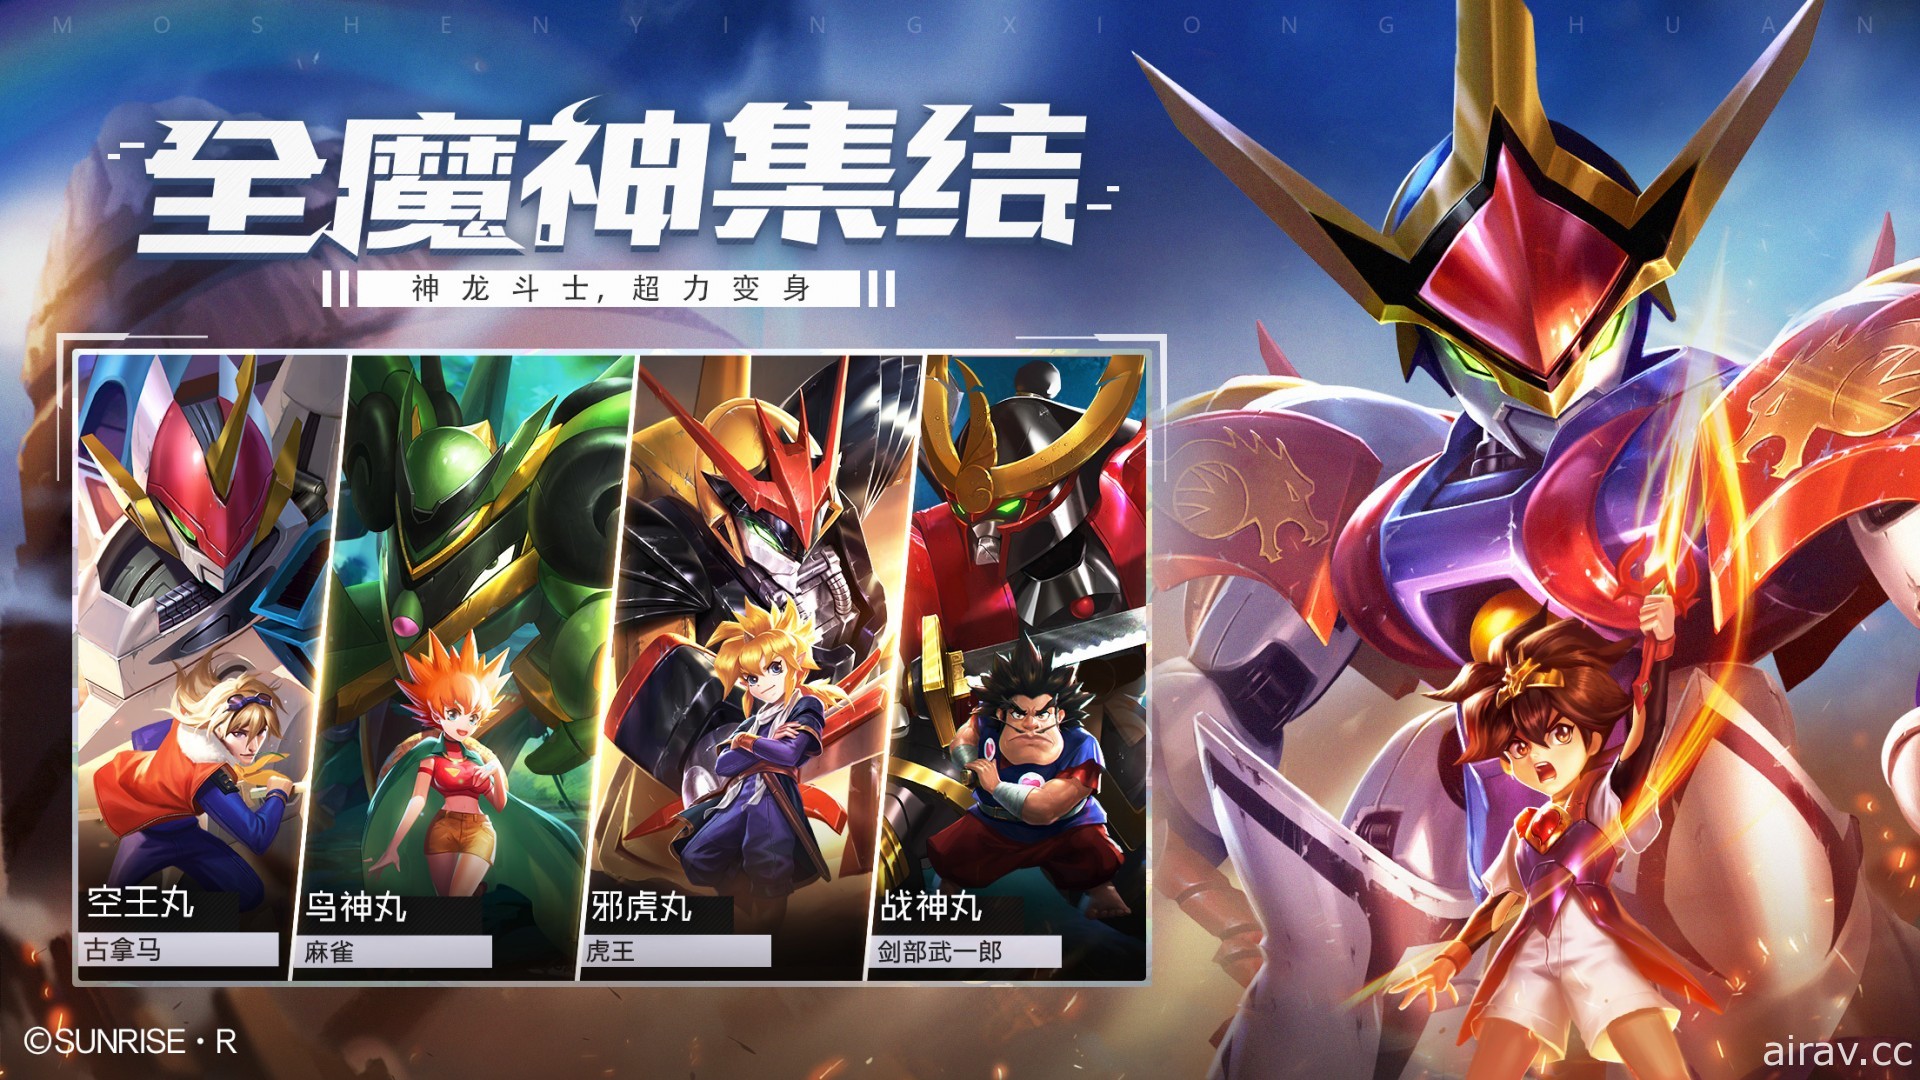 SUNRISE 正版授權《魔神英雄傳 - 神龍鬥士》於中國開放 iOS 版預先註冊